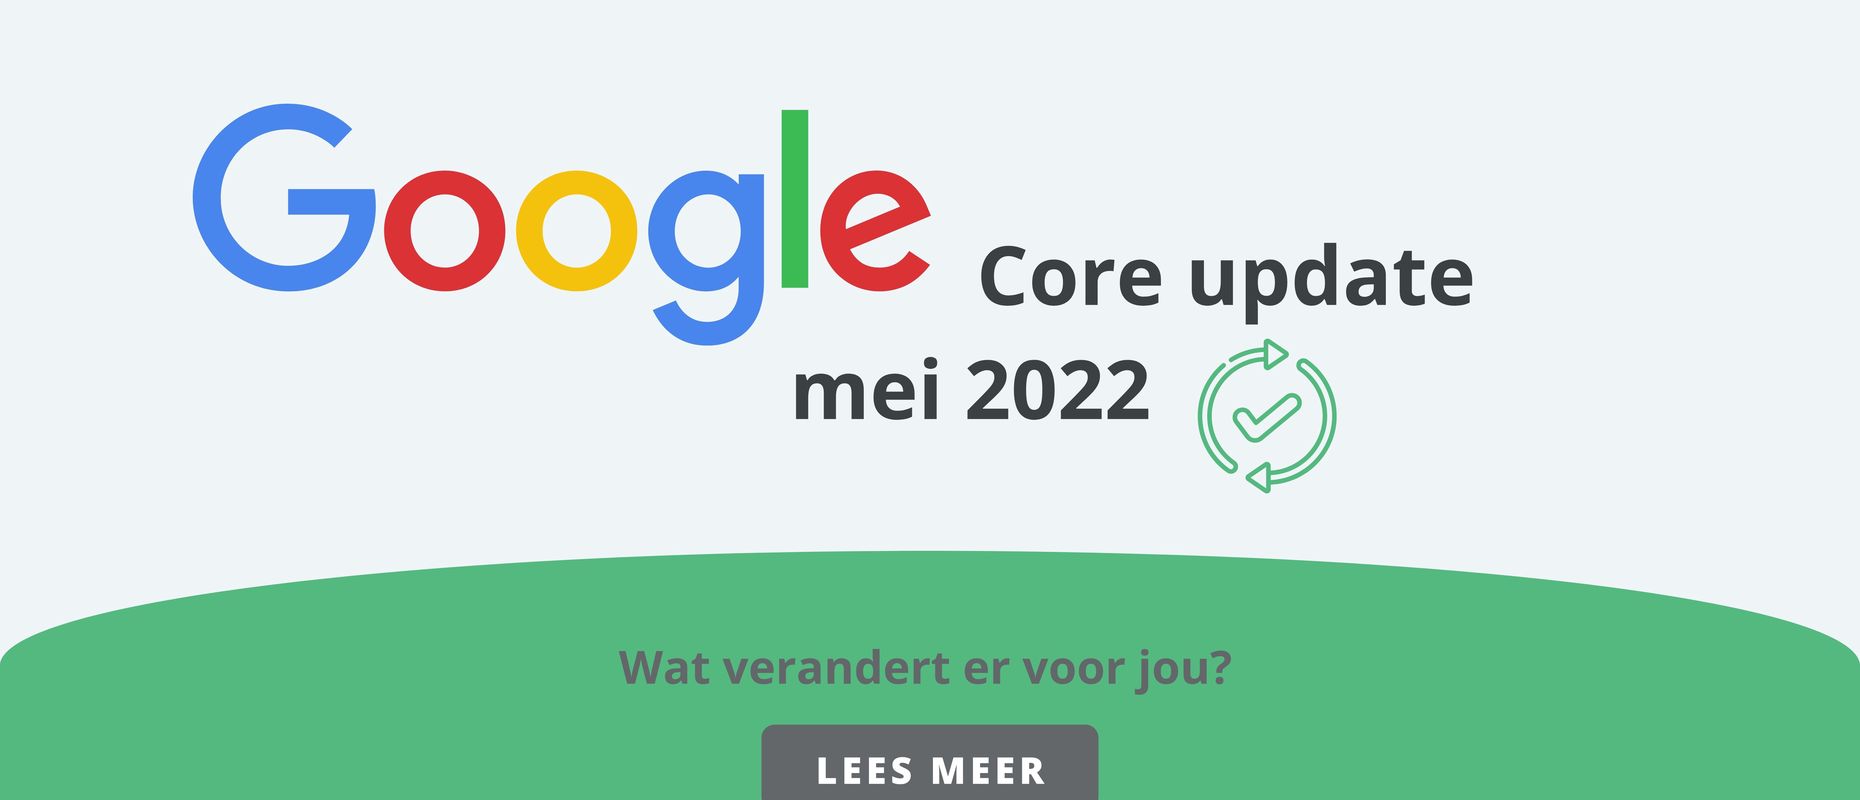 Google Core update mei 2022.jpg